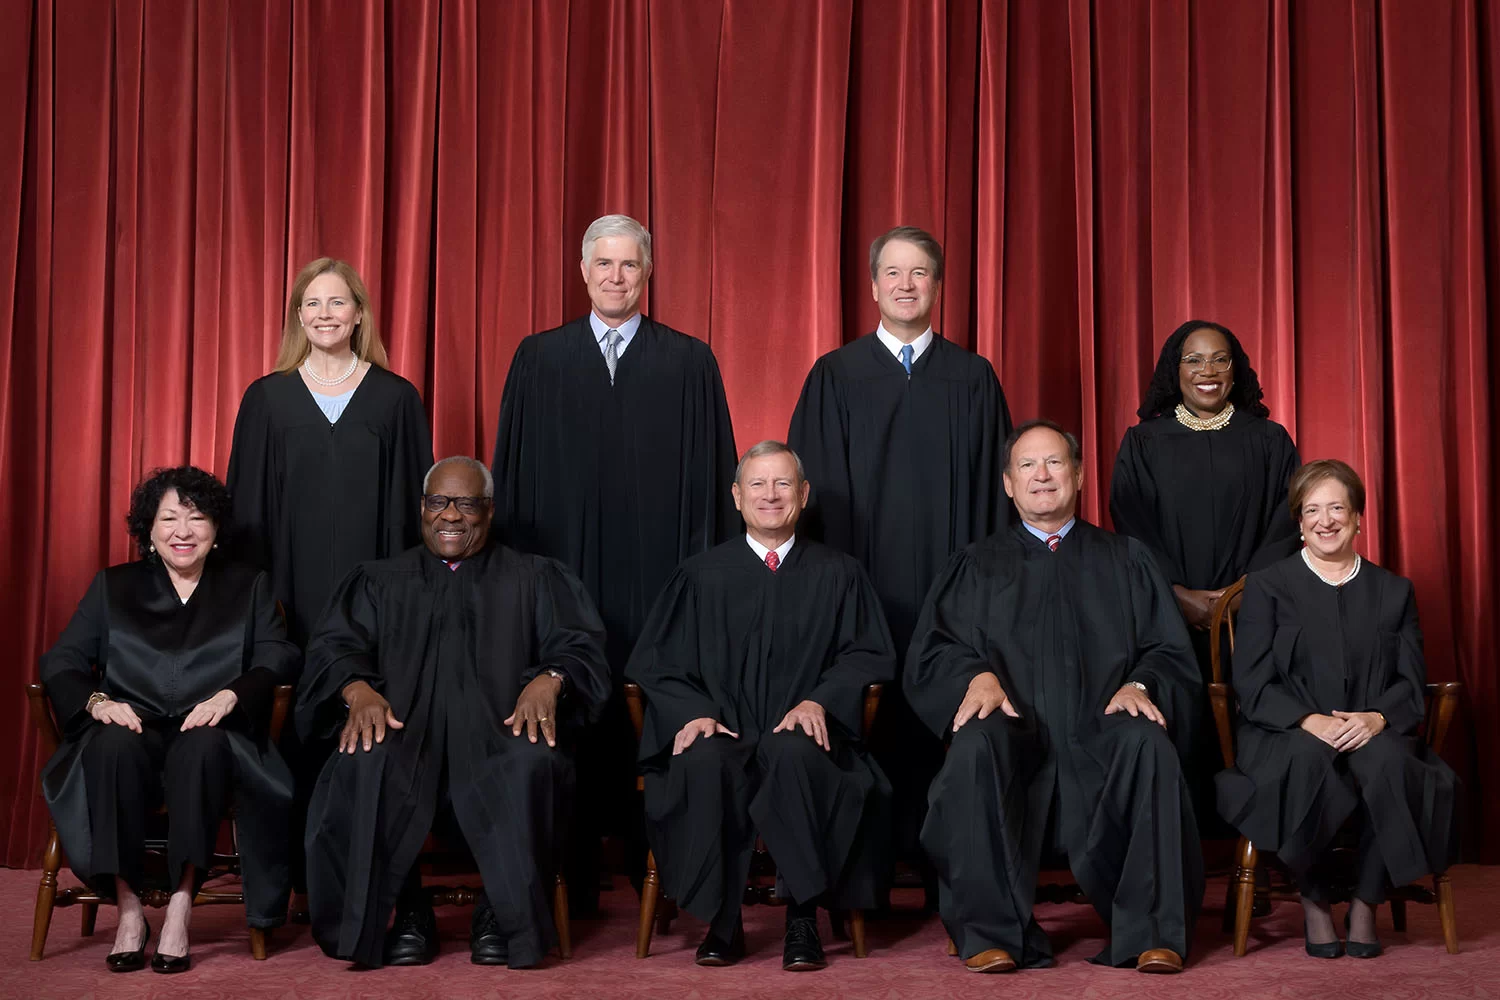 Elecciones de EEUU en manos del Tribunal Supremo, tres de sus nueve jueces fueron nombrados por Trump